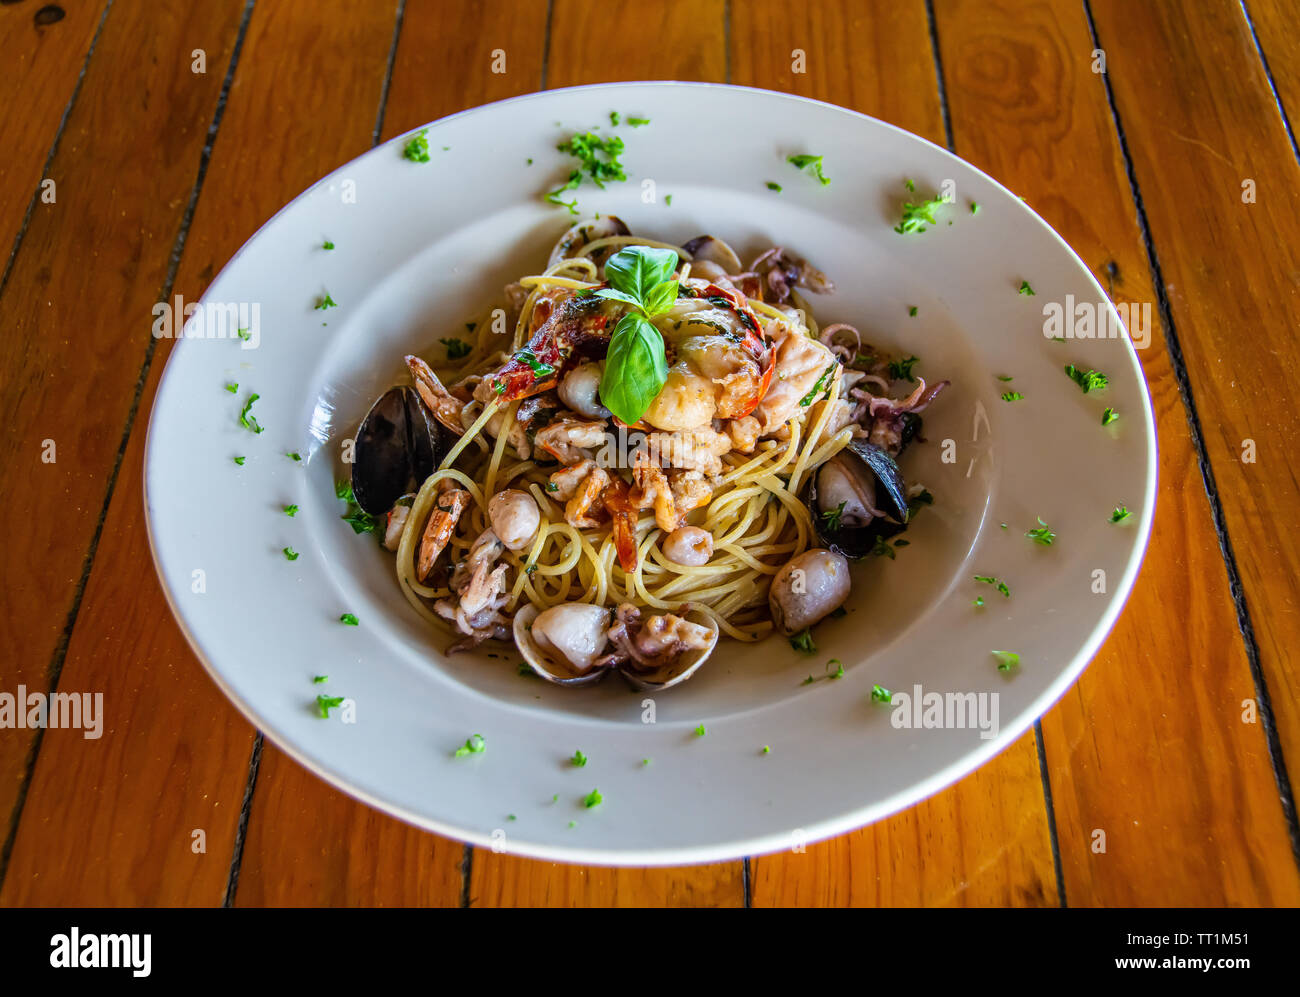 Mariscos pastas/spaghetti bowl en blanco sobre la mesa de madera Foto de stock